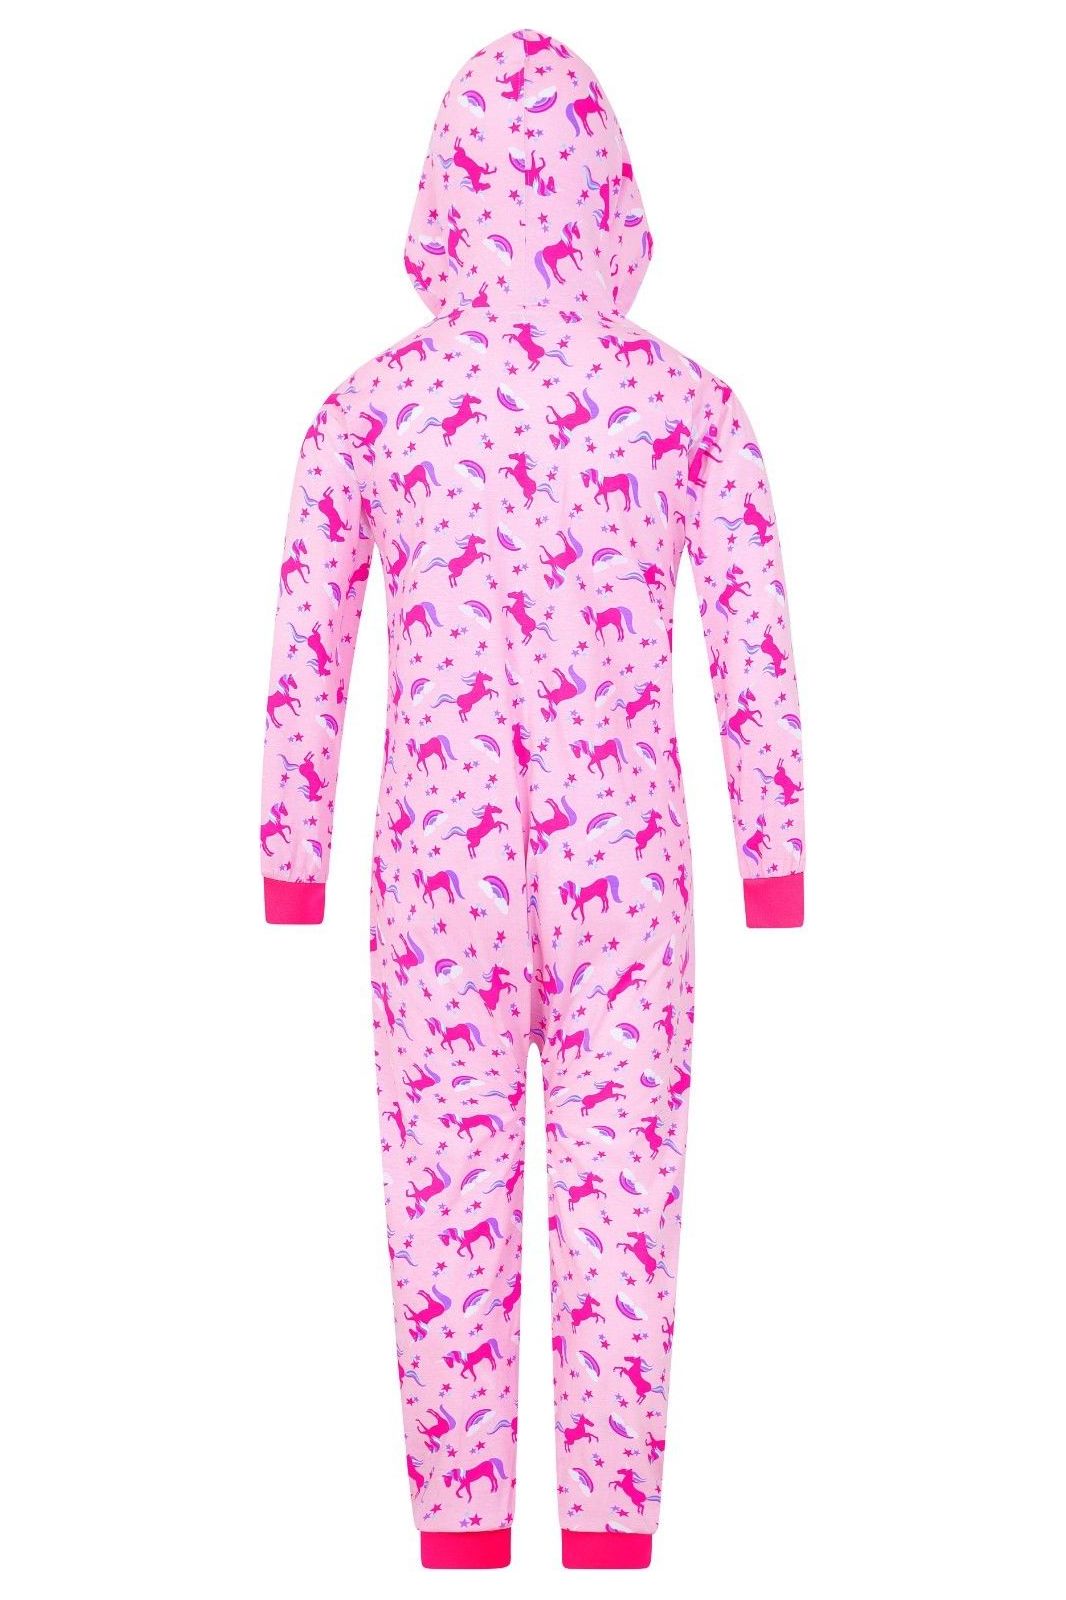 Girls Pink Unicorn Onesie - Pyjamas.com